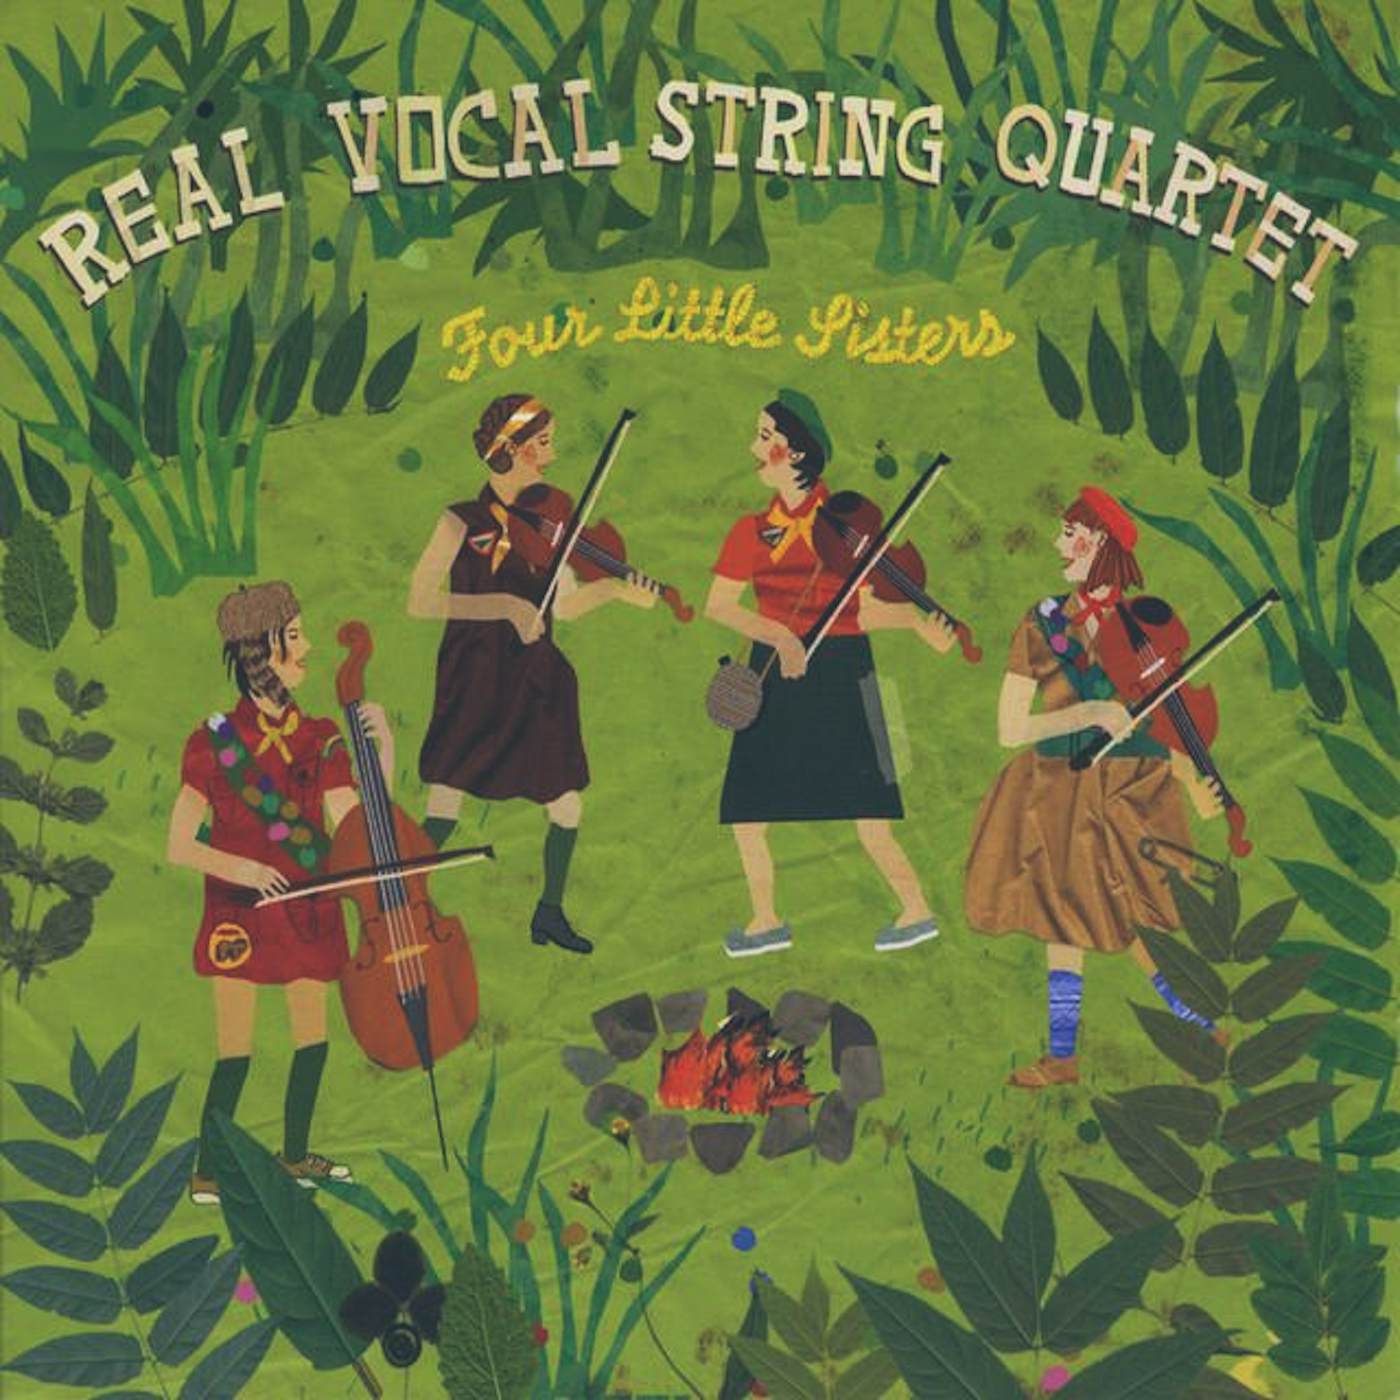 Real Vocal String Quartet